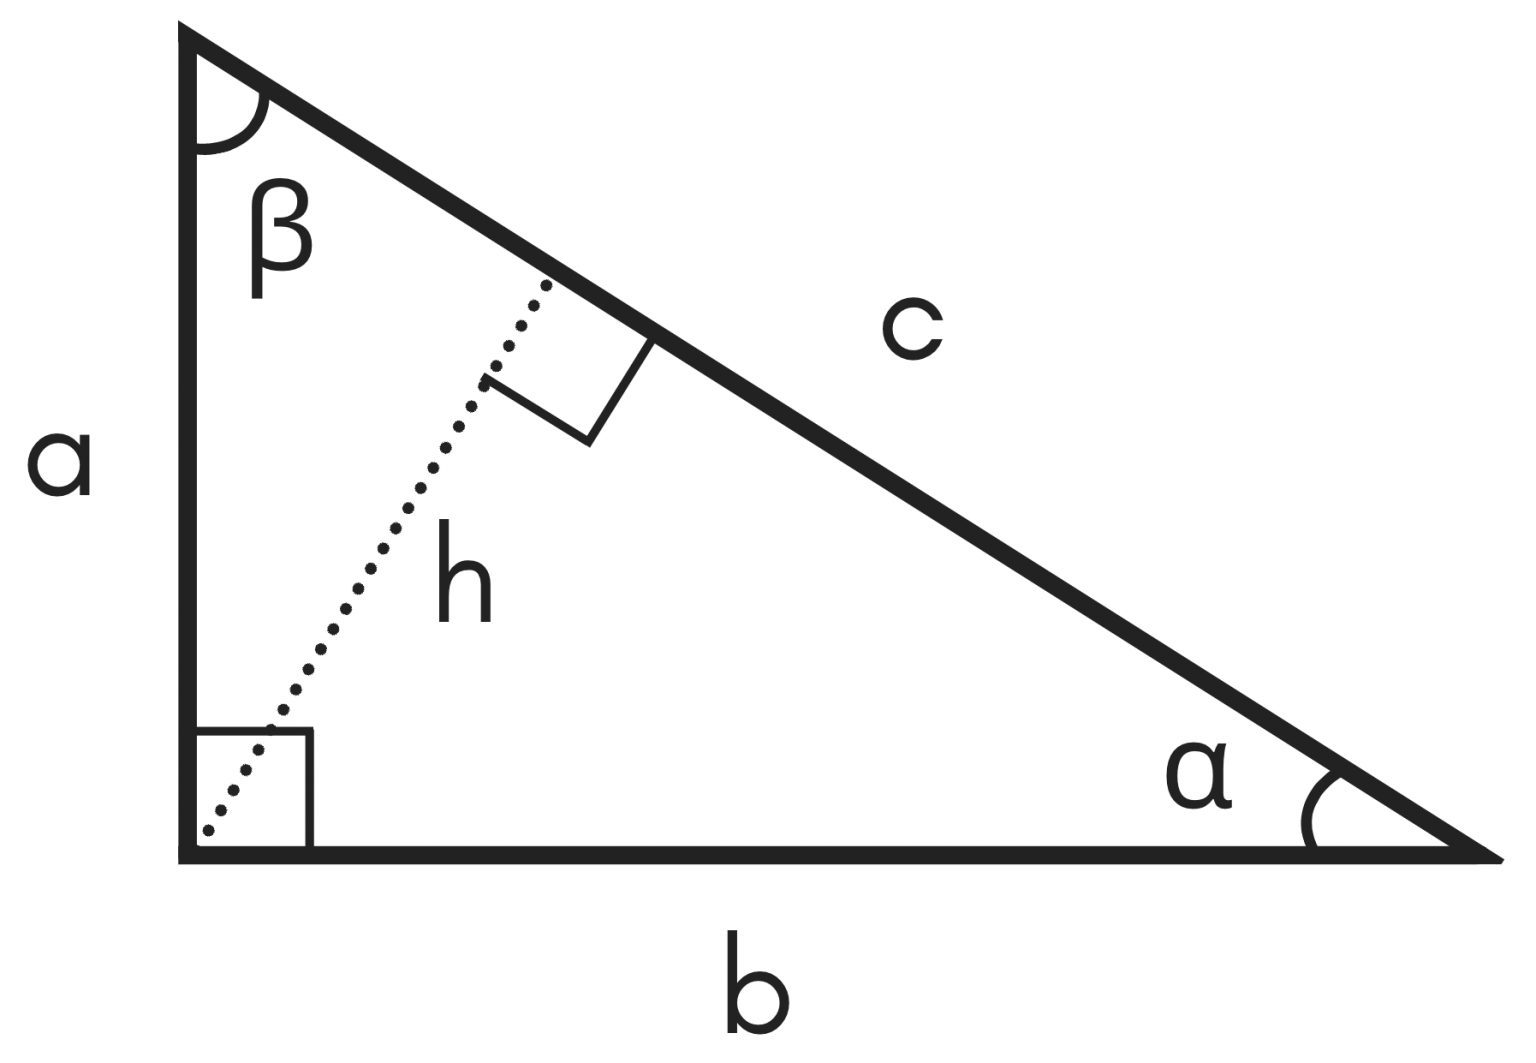 isosceles right triangle isosceles triangle